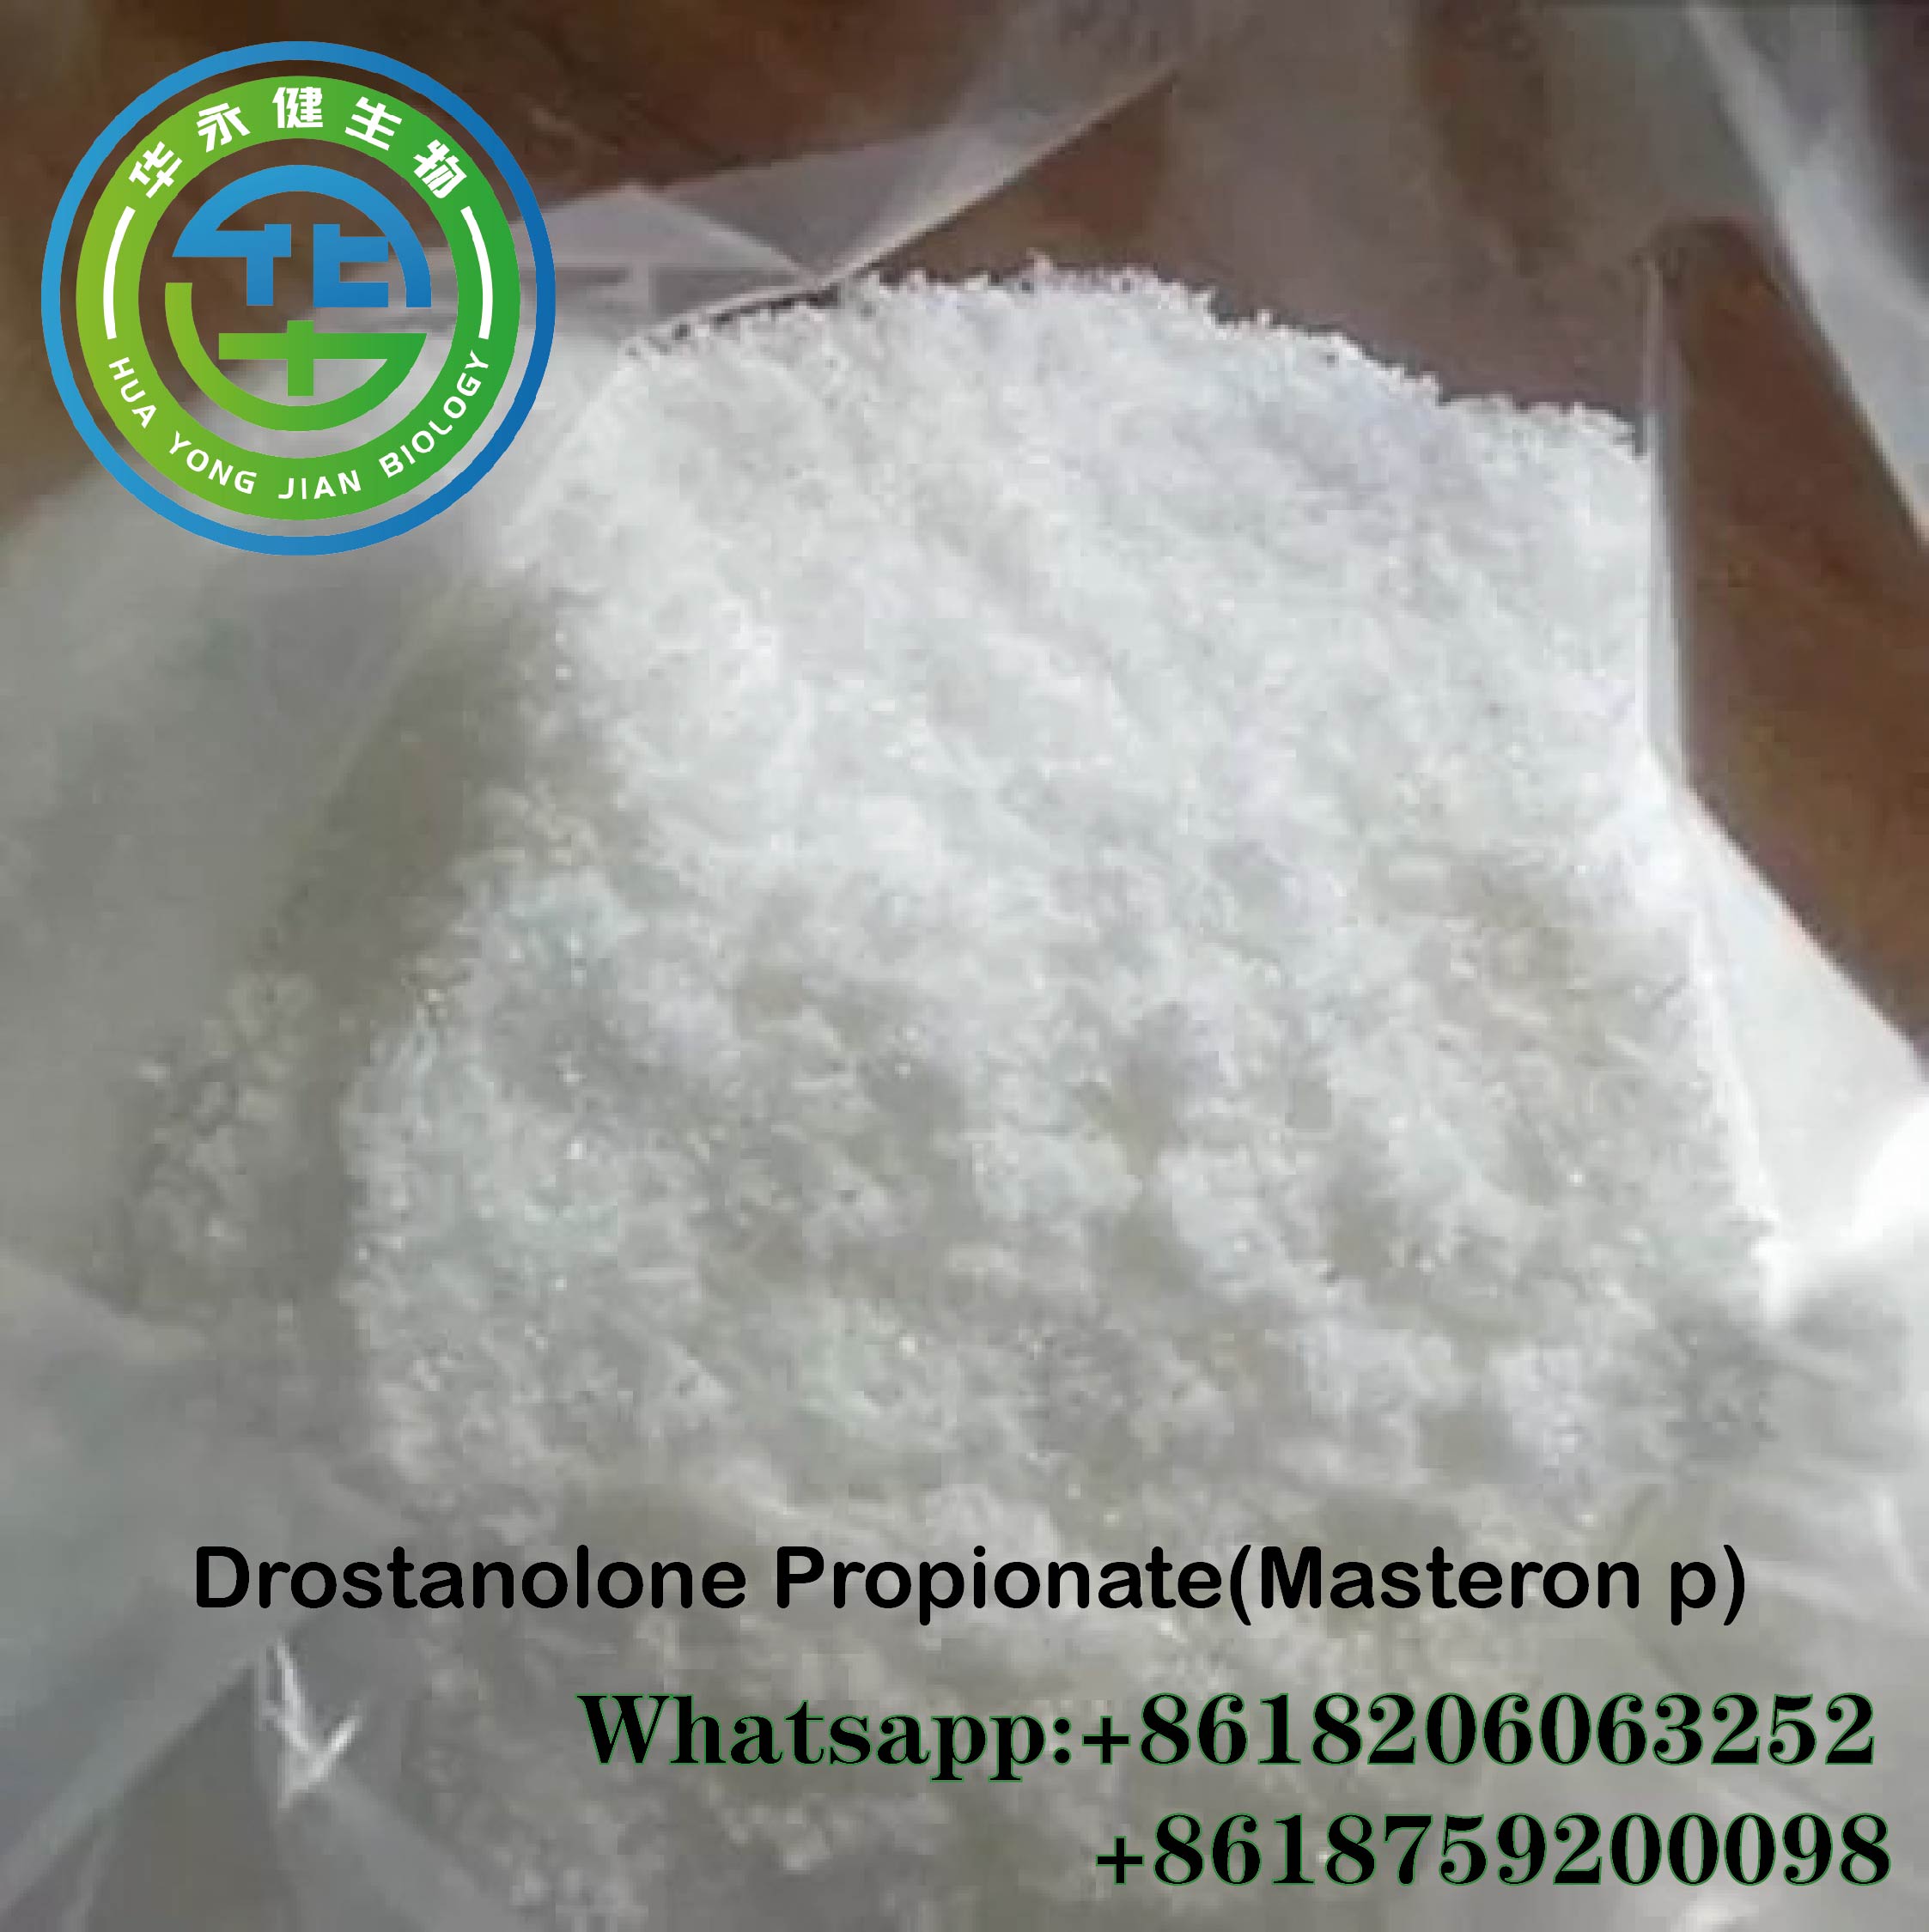 خريد ڪريو Drostanolone Propionate Steroids Raws Fitness Supplement Steroid Harmon Masteron Powder CasNO.521-12-0 خاص تصوير